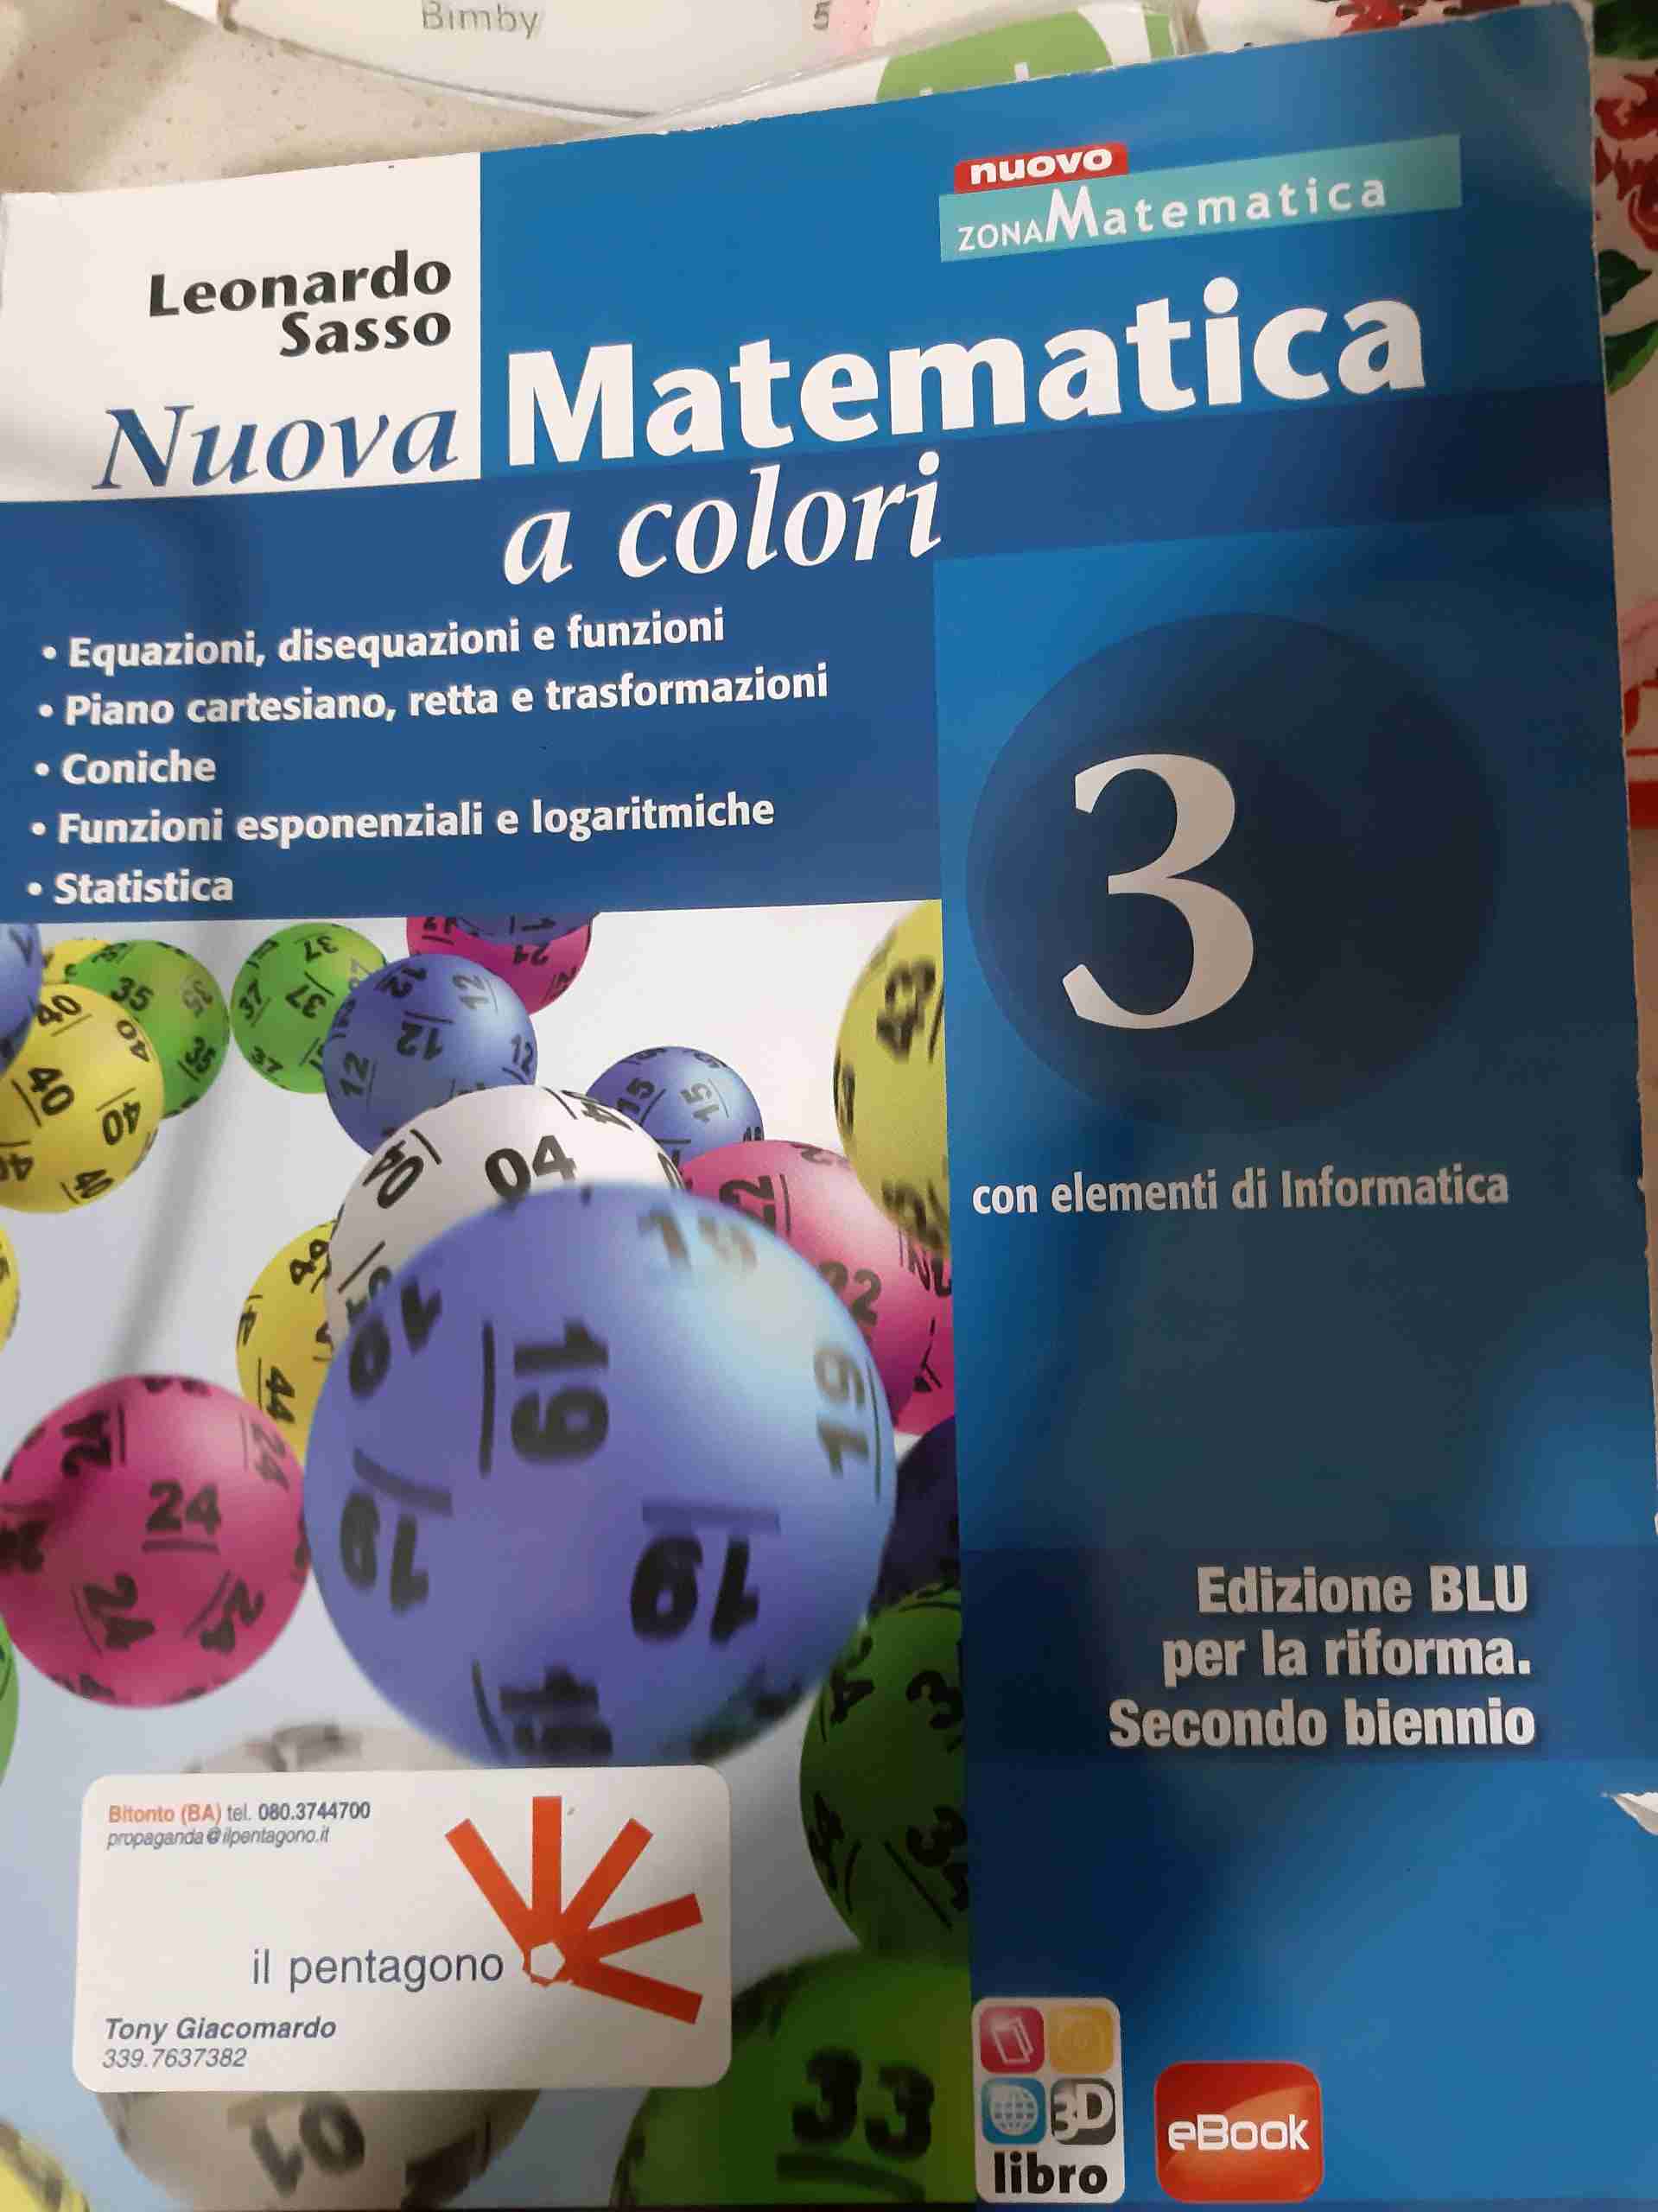 Nuova matematica a colori. Ediz. blu. Per le Scuole superiori. Con CD-ROM. Con espansione online. Vol. 3: Equazioni, desequazioni e funzioni-Piano cartesiano, retta